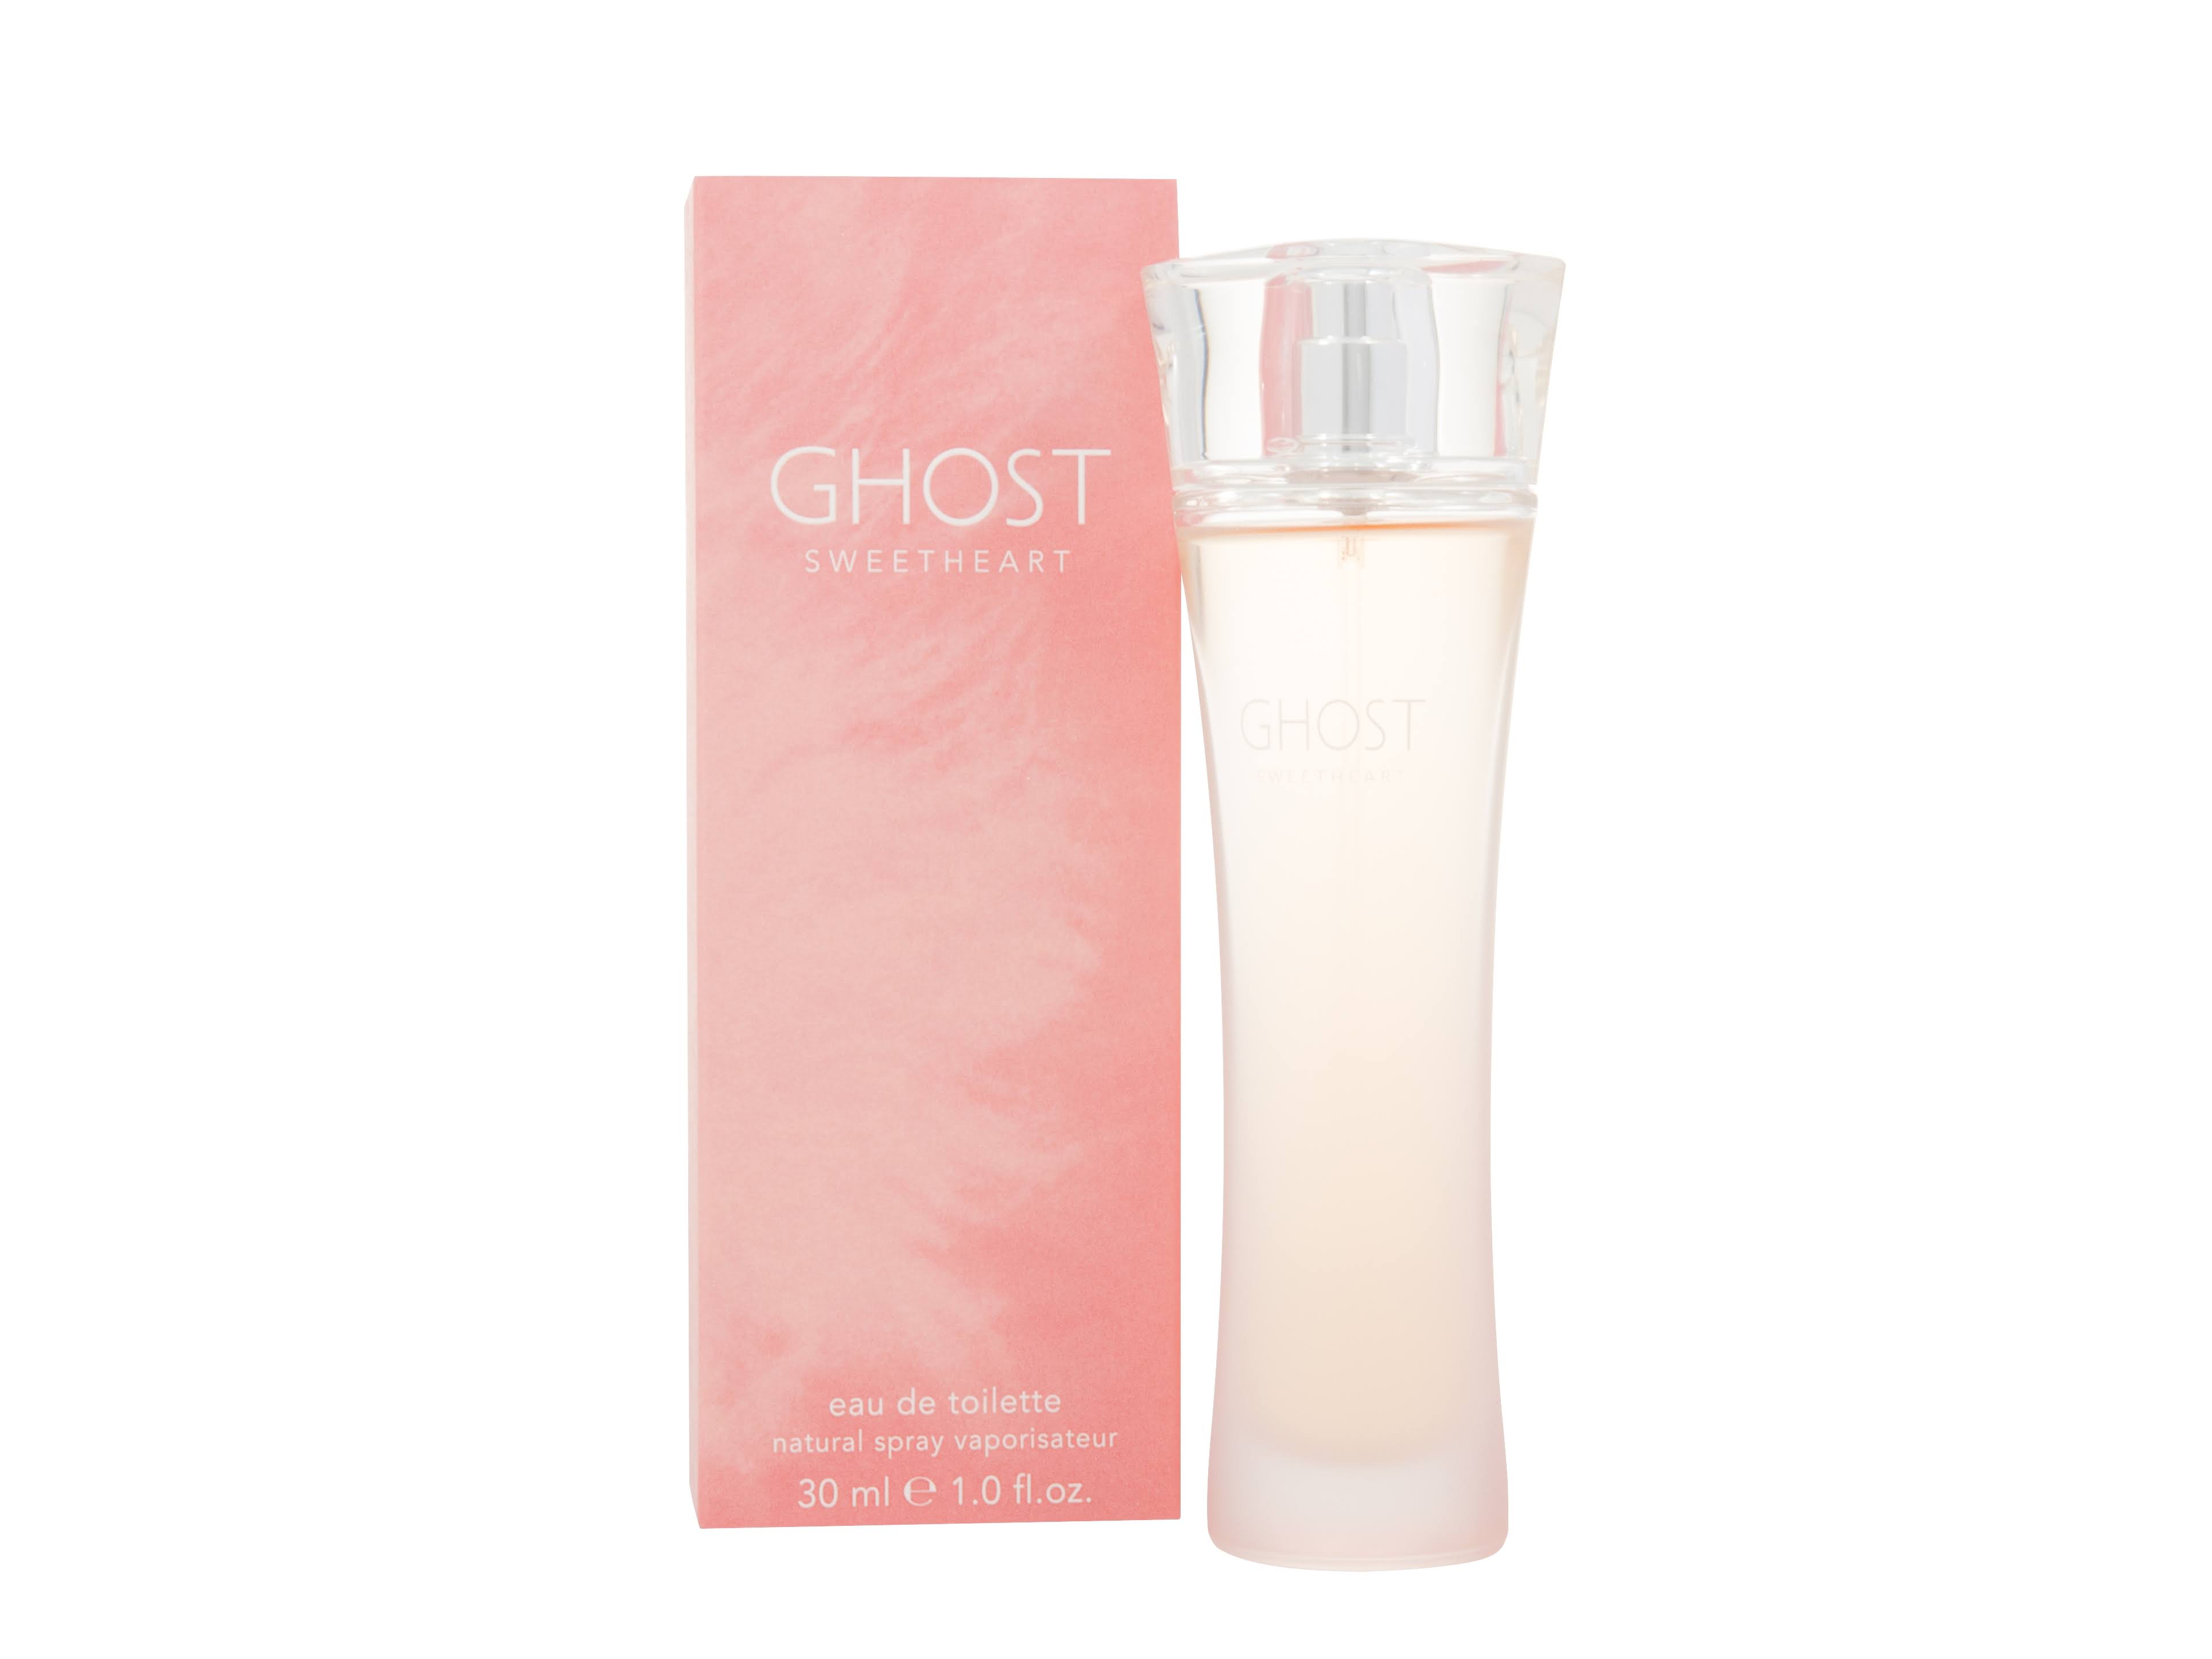 Ghost for Women Eau De Toilette Spray - 30ml, Sweetheart